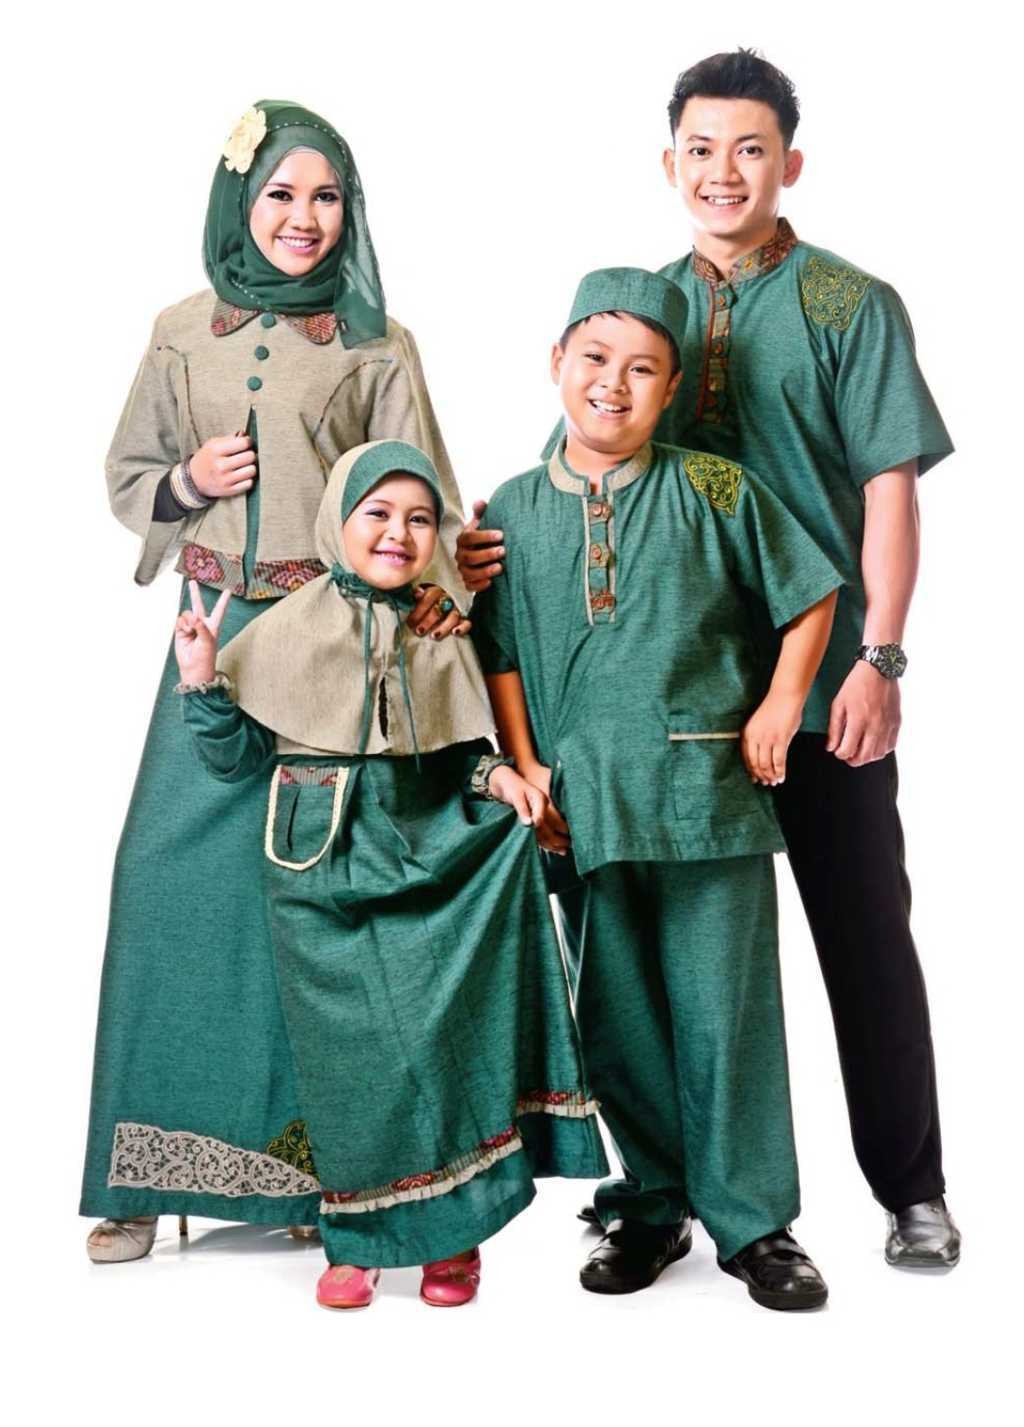 Bentuk Baju Lebaran Keluarga 2020 O2d5 25 Koleksi Gaun Pesta Muslim Terbaru 2016